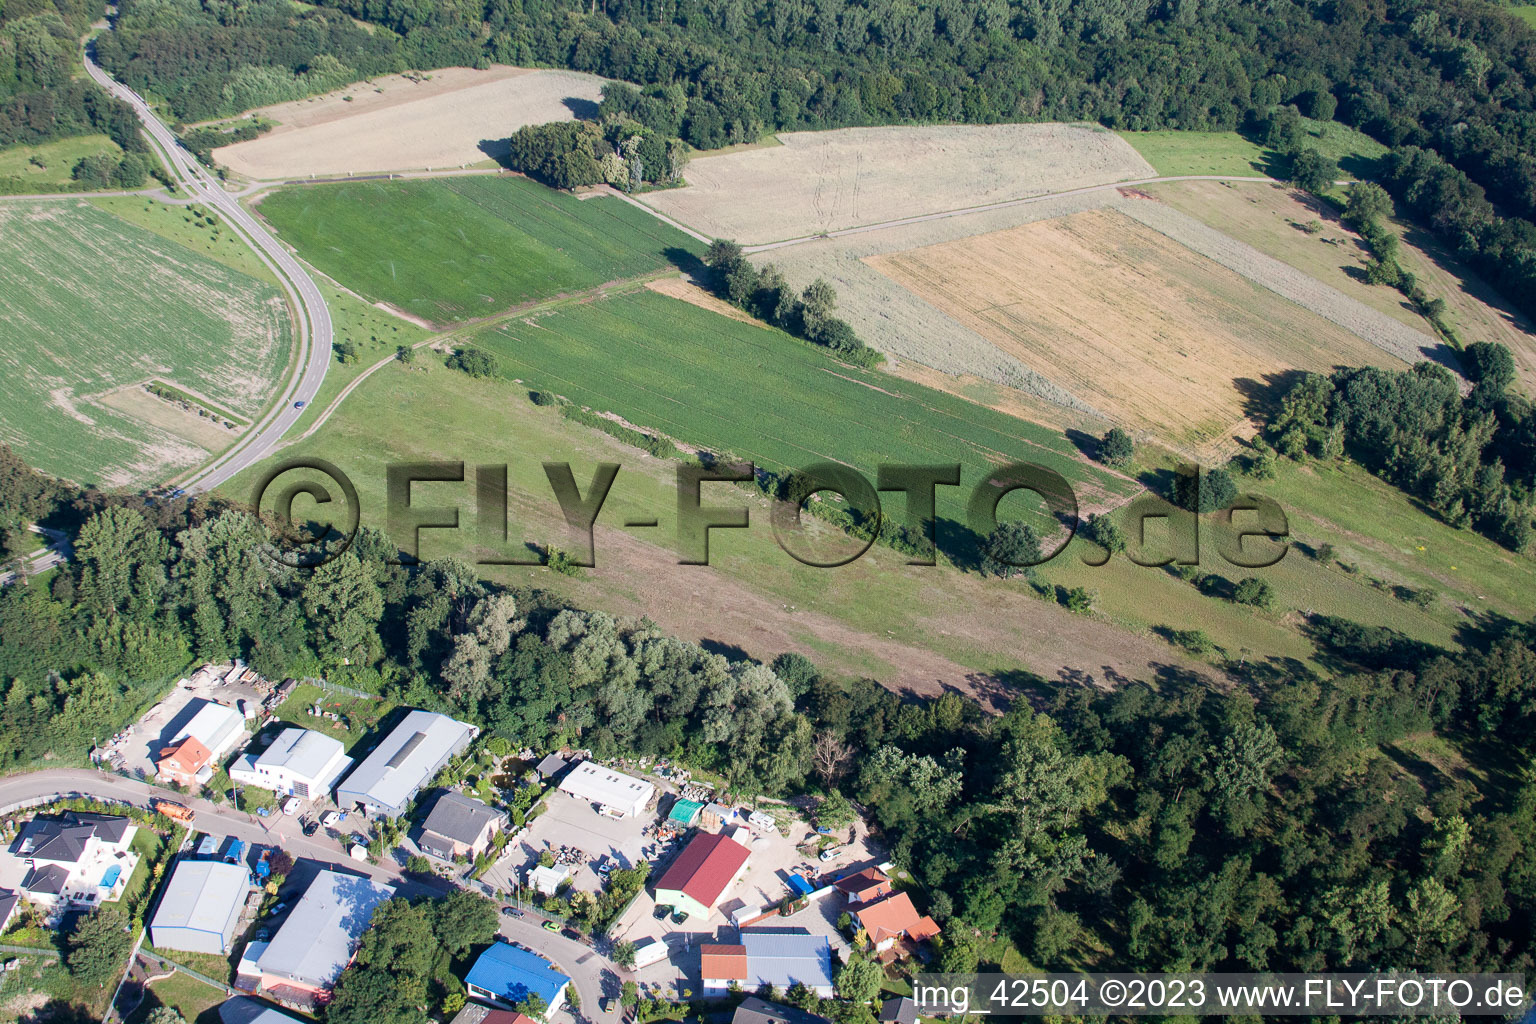 Photographie aérienne de Fosse d'argile à Jockgrim dans le département Rhénanie-Palatinat, Allemagne